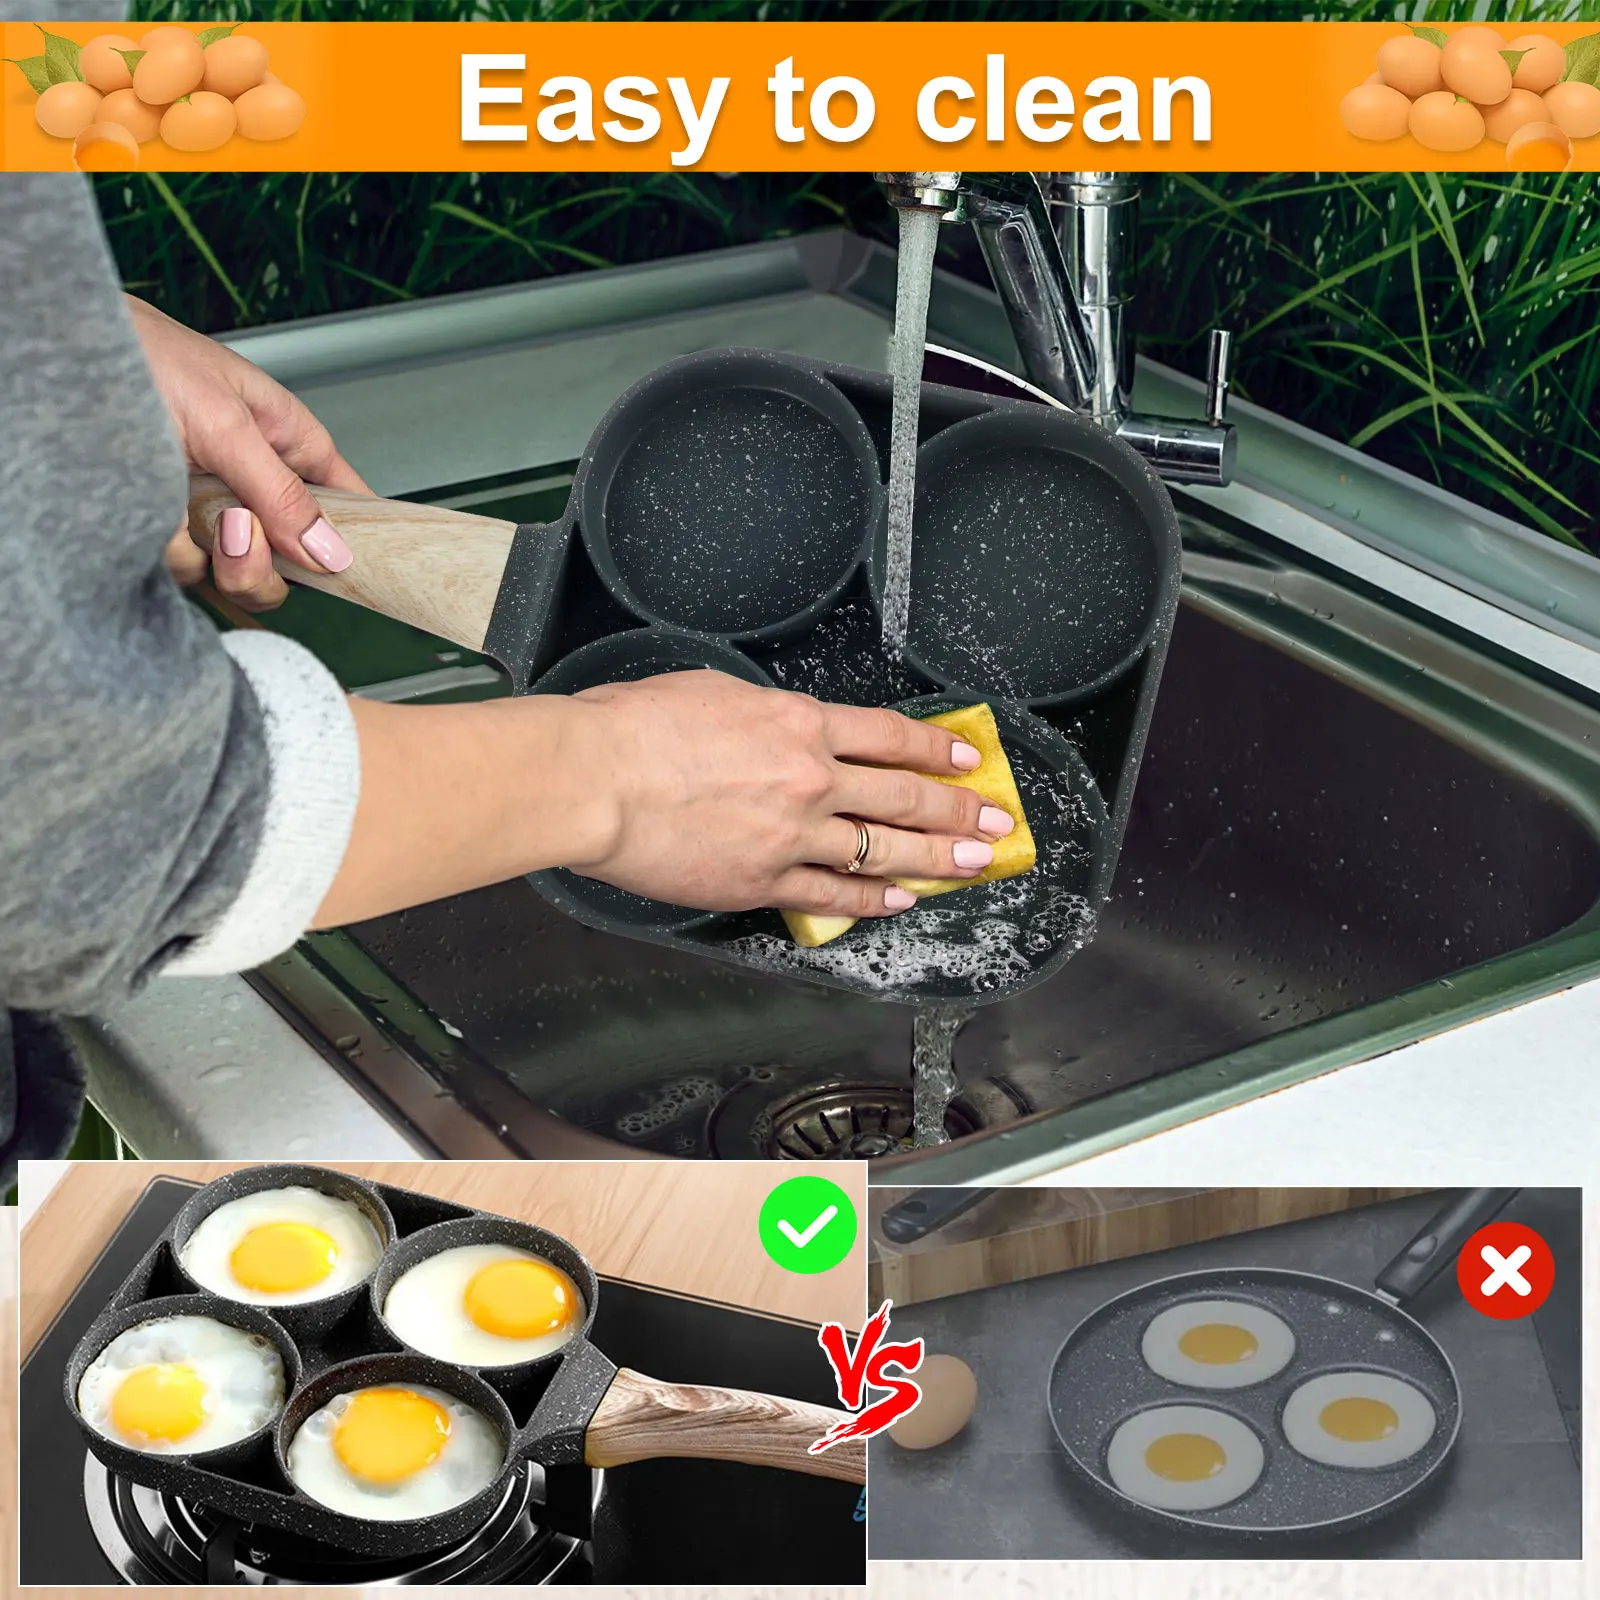 https://ae01.alicdn.com/kf/Sb8af49fdf5ca4dc2be805dc6876c24acc/Egg-Frying-Pan-Set-Aluminum-Nonstick-Mini-Egg-Cooker-Omelet-Pan-4-Cups-Egg-Frying-Pan.jpg